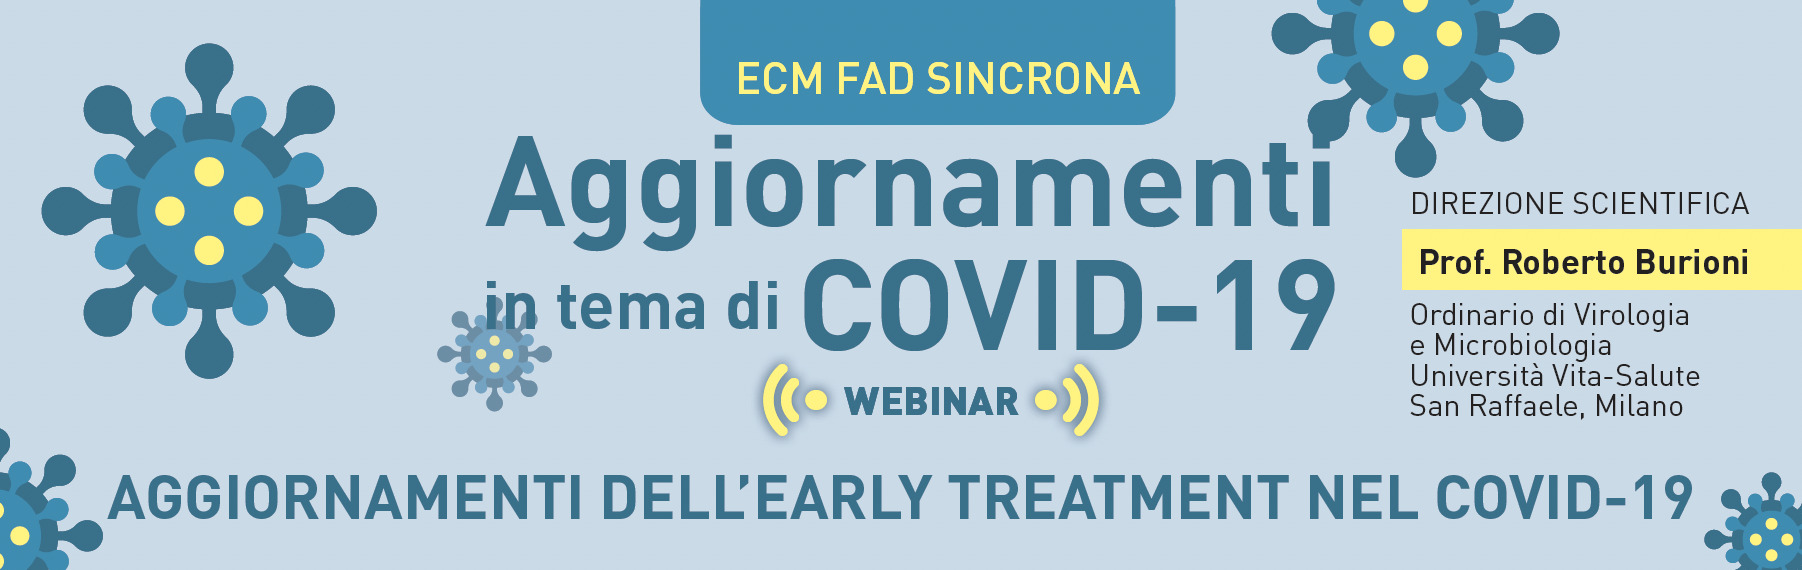 Serie di Webinar FAD in materia di Covid-19 a cura del Prof. Roberto Burioni – accreditati ECM e gratuiti – 17, 24 Novembre e 15 Dicembre